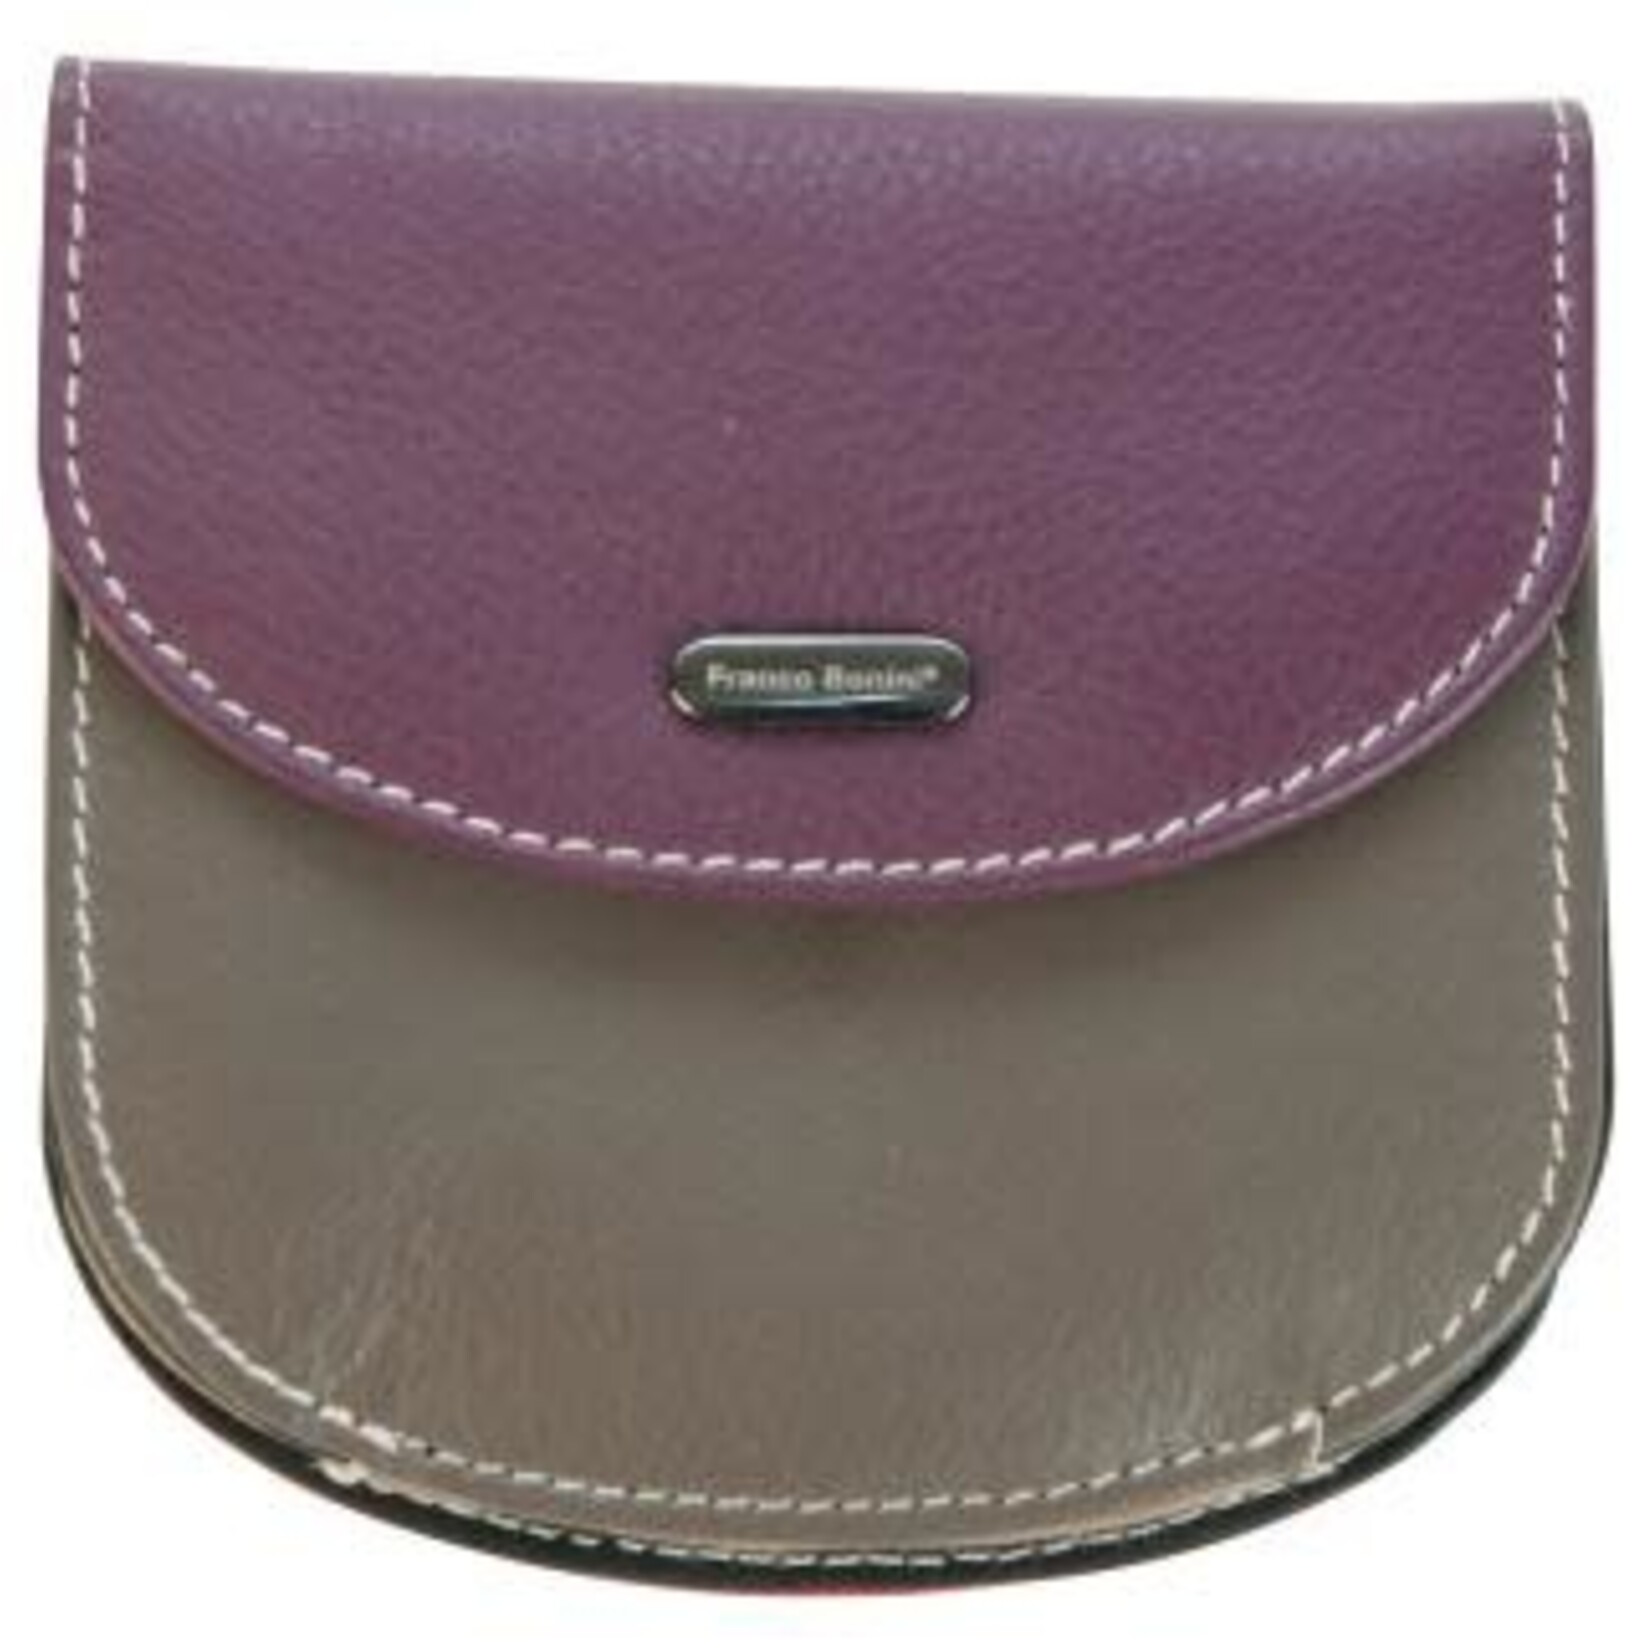 franco bonini purple multi leather card coin purse